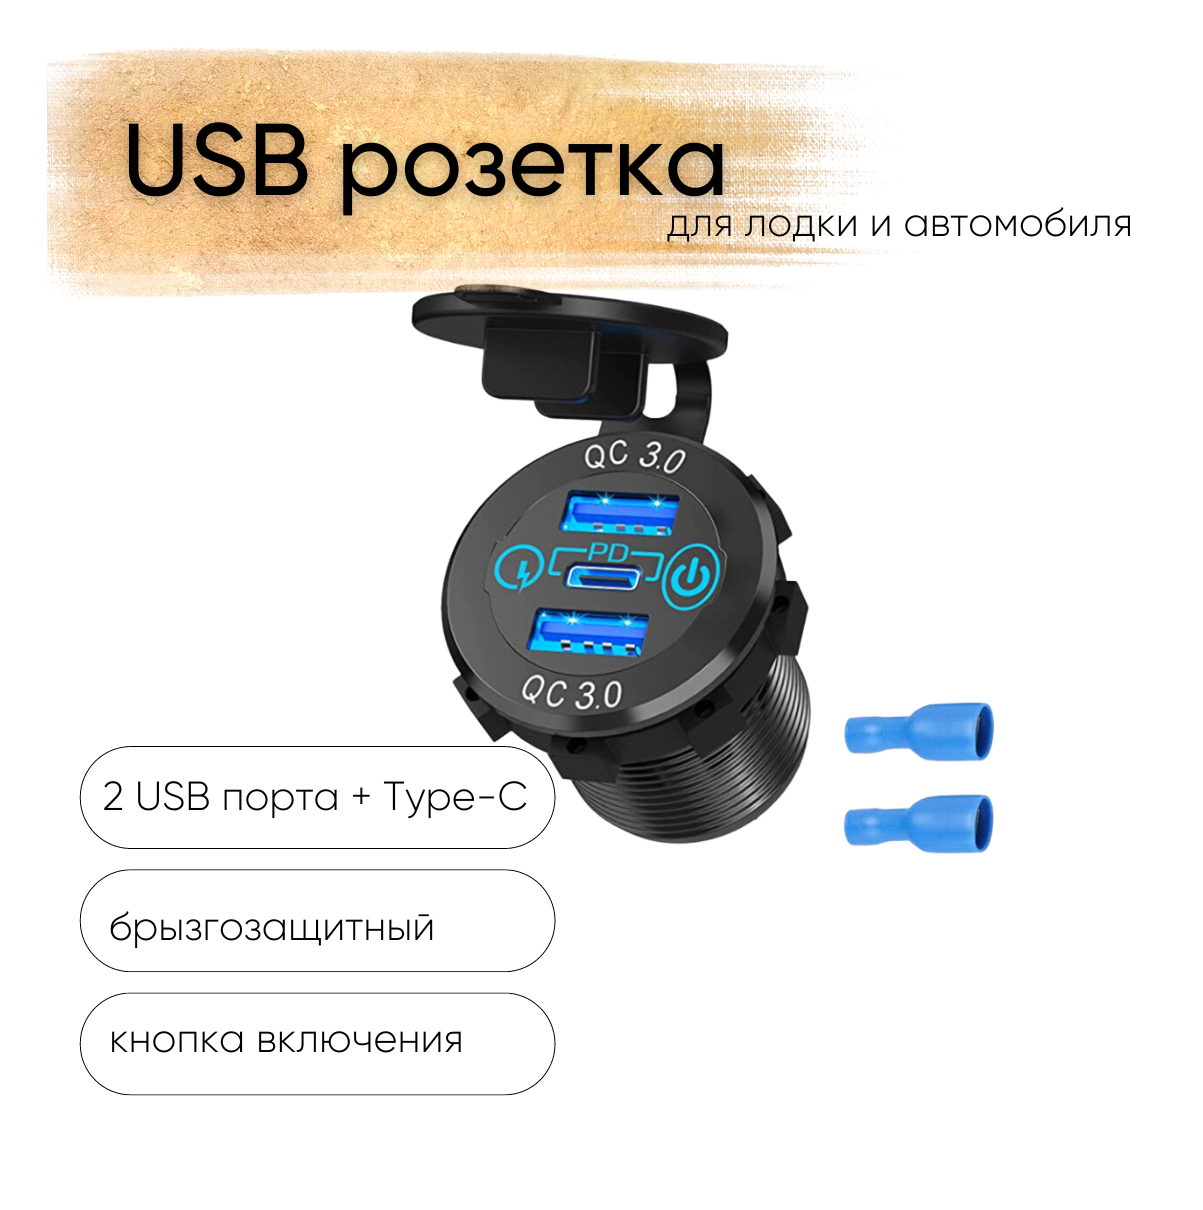 Розетка 12V / 24V USB 2 шт + Type-C быстрая зарядка + кнопка включения 3 выхода QC 3.0 PD круглая цвет синий